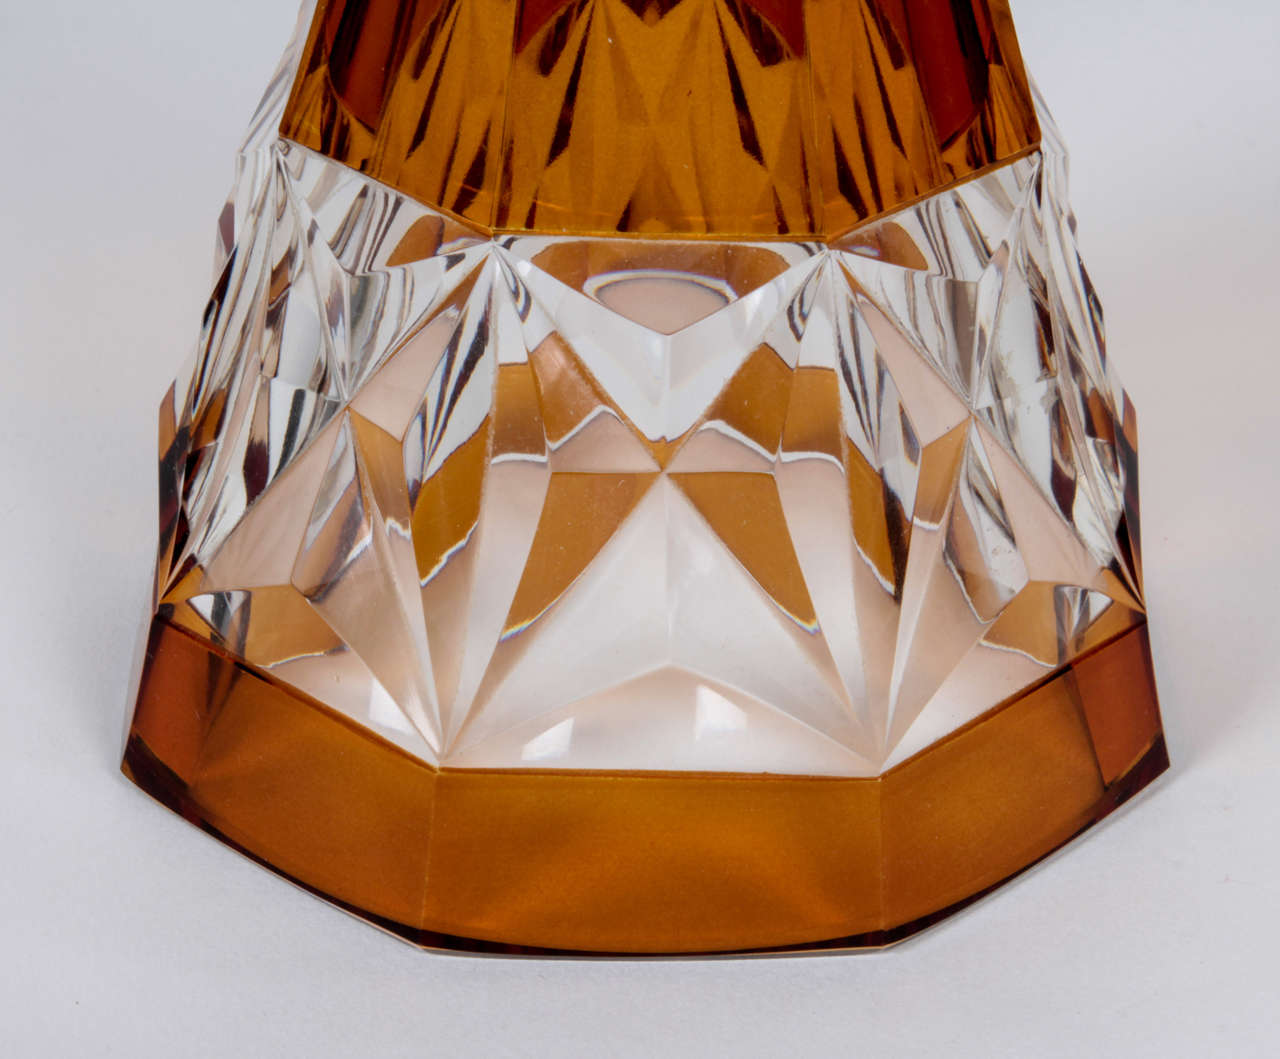 Czech Cubism / Art Deco Panel-cut crystal vase c. 1912-25 For Sale 2